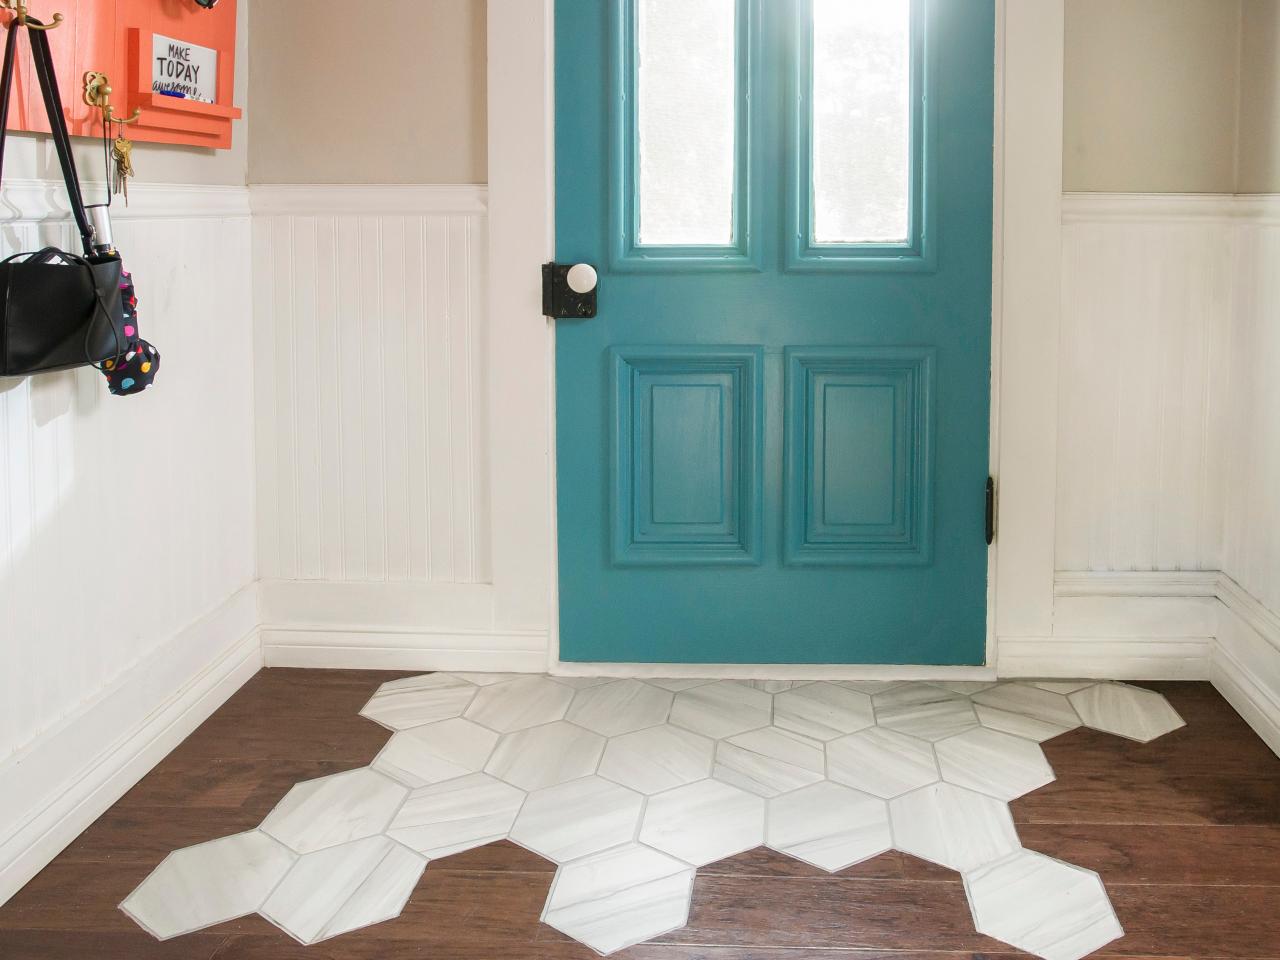 A Tile Rug Within Hardwood Floor, Laying Tile Over Hardwood Floor